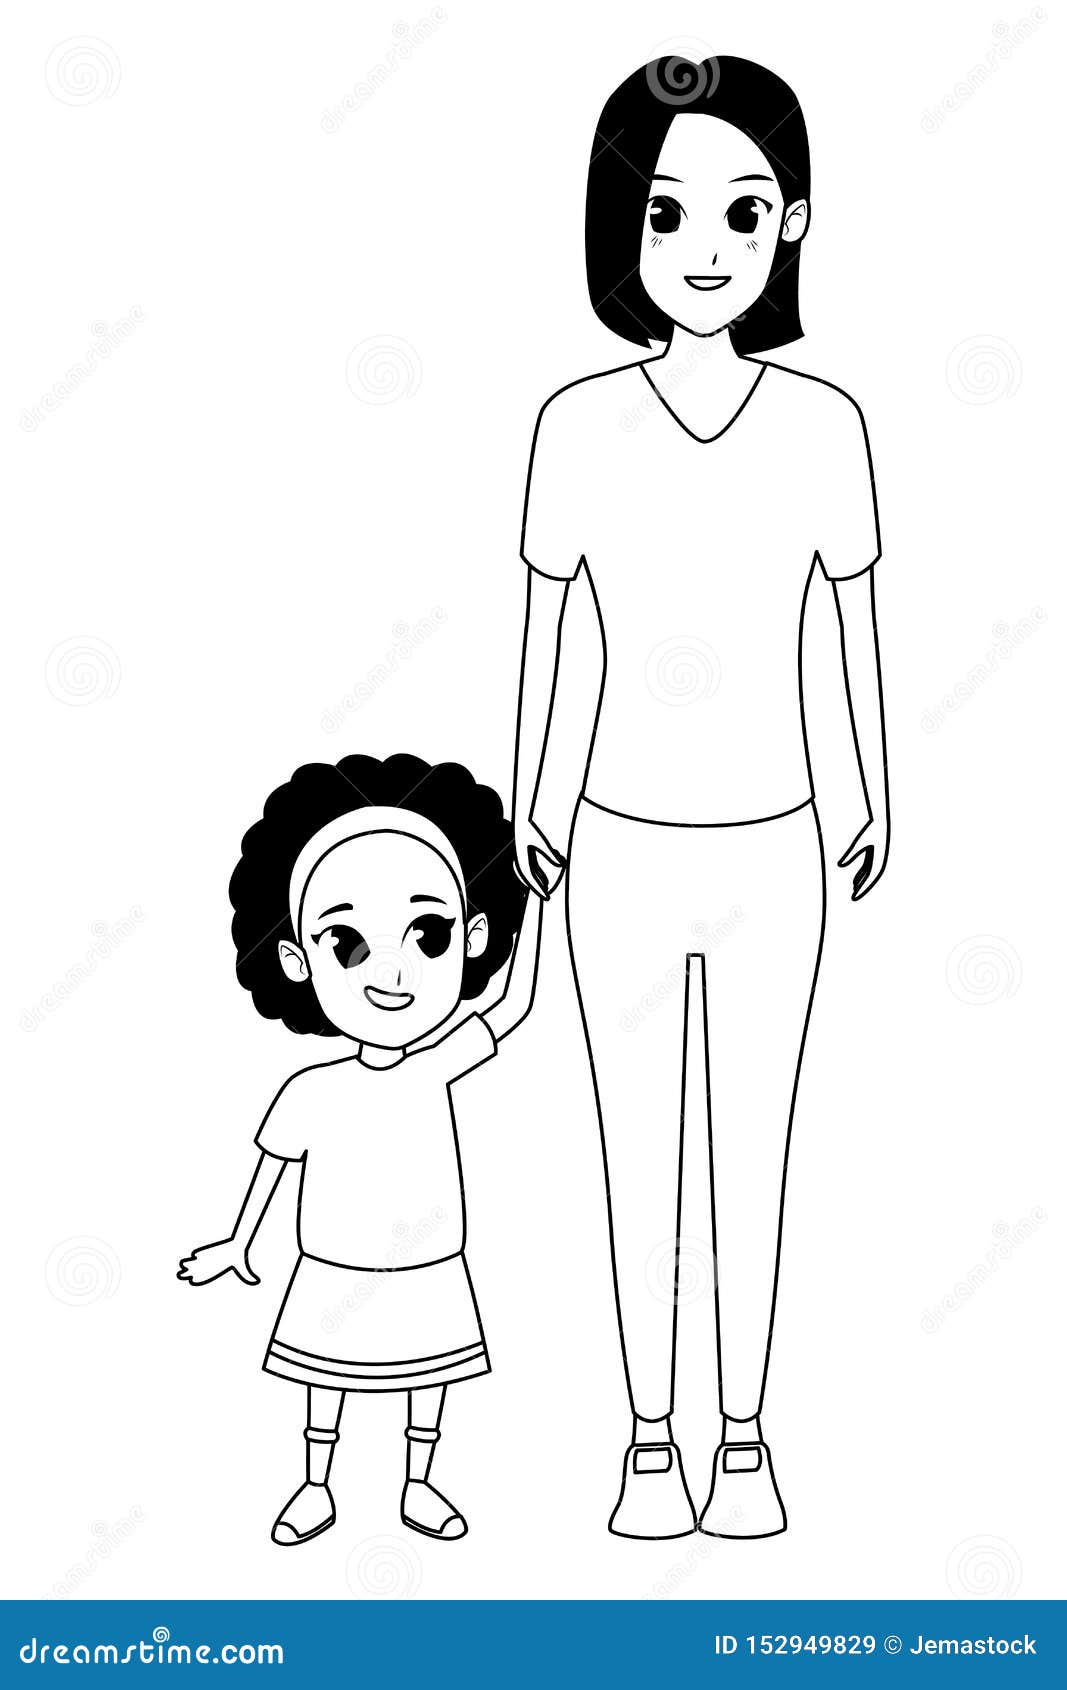 desenho vetorial no estilo de doodle. mãe solteira com filho